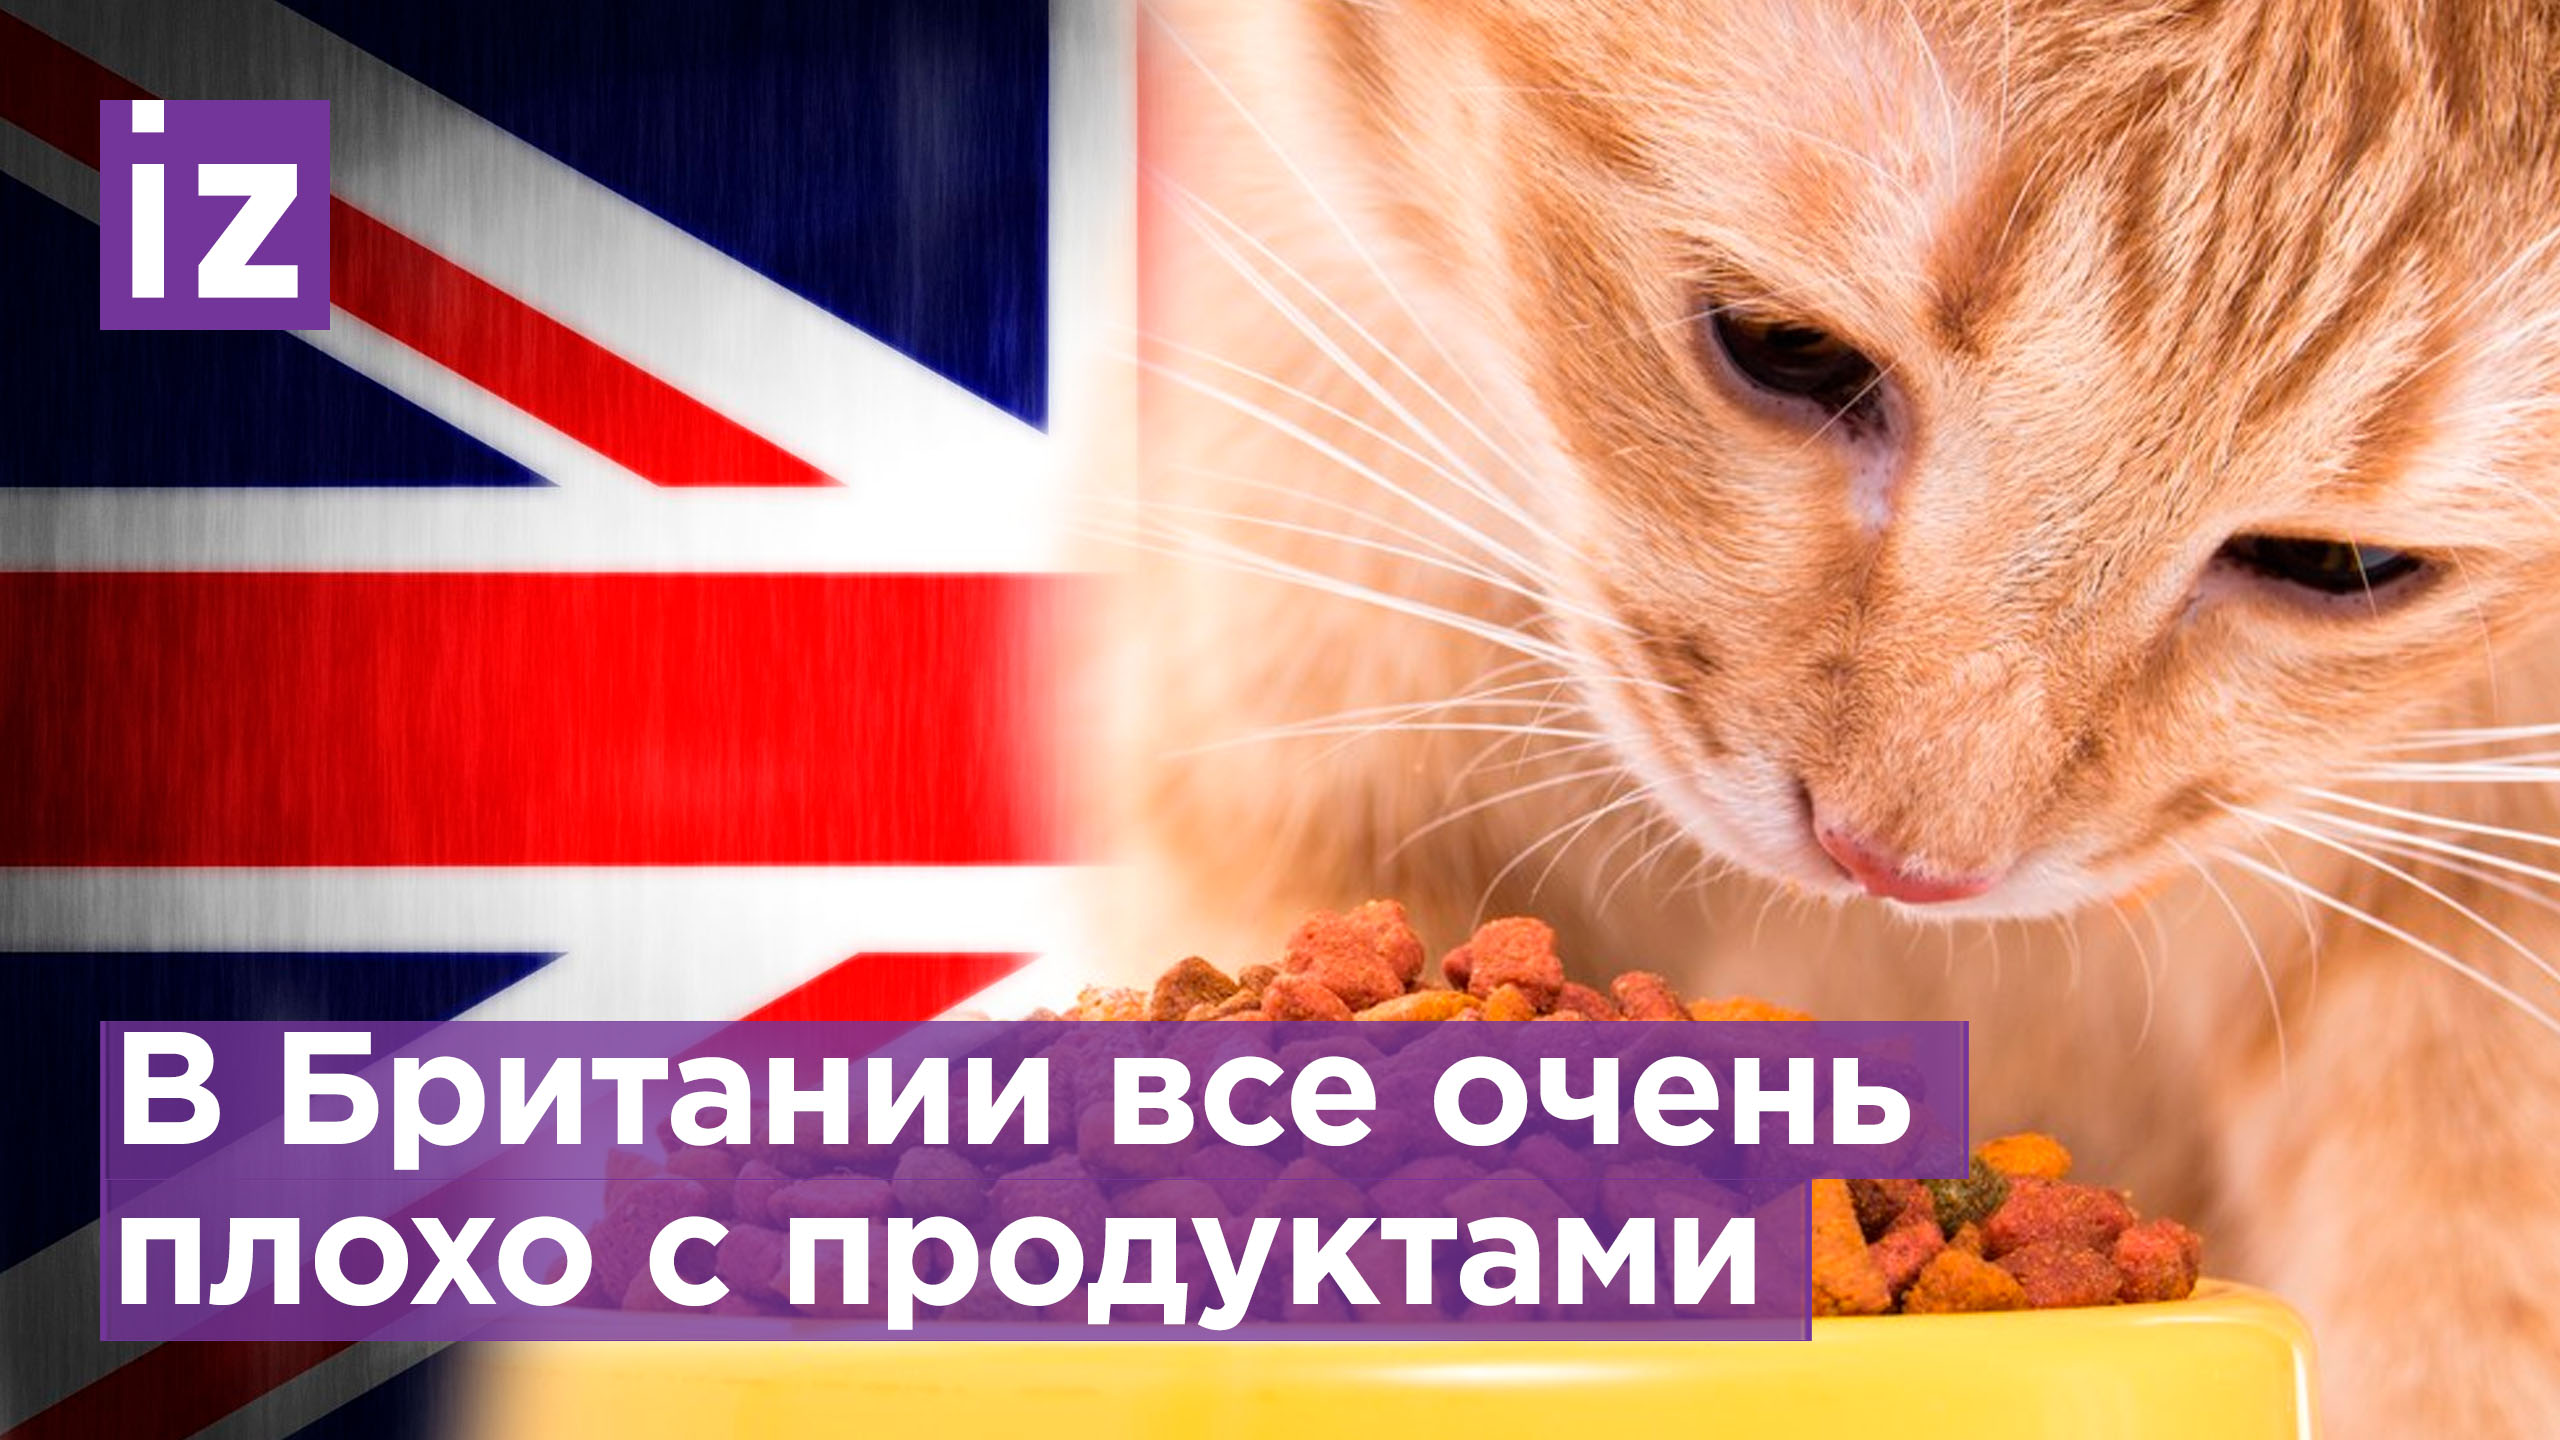 Из-за роста цен британцы вынуждены есть корма для домашних животных - издание Independent / Известия